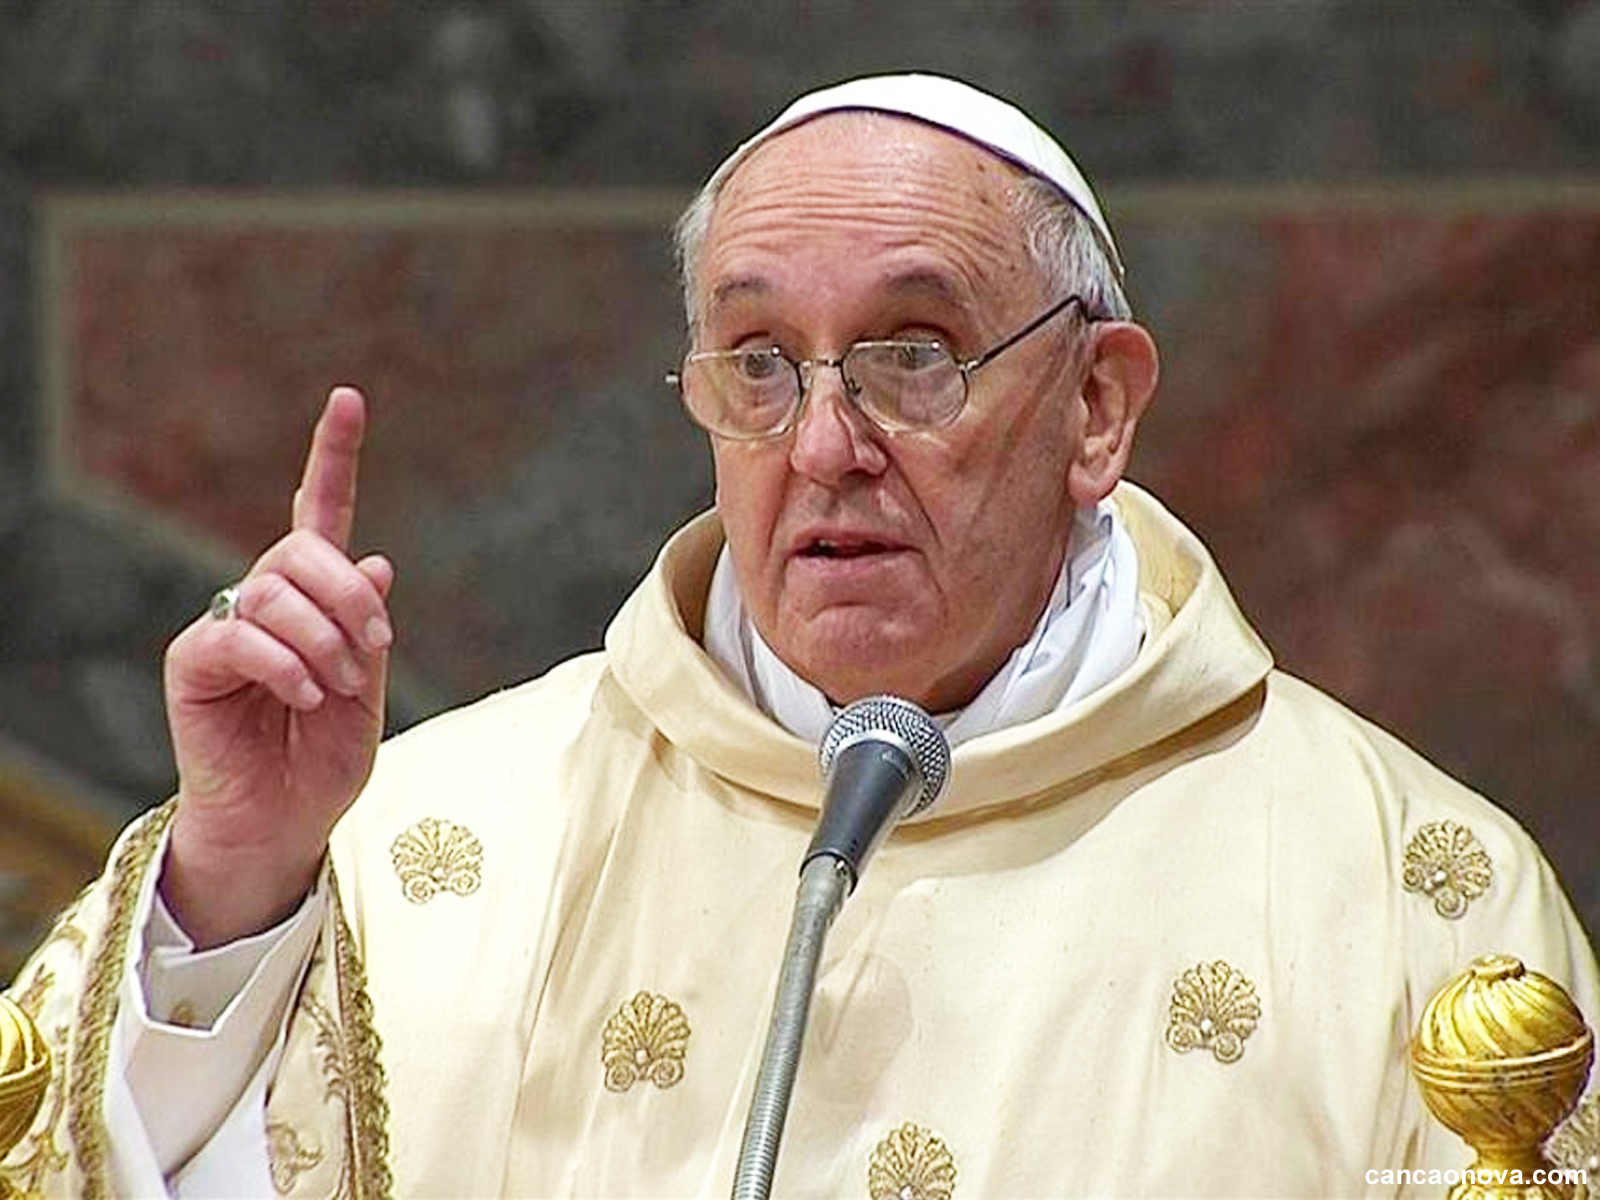 O que pensa o Papa Francisco sobre a ideologia de gênero